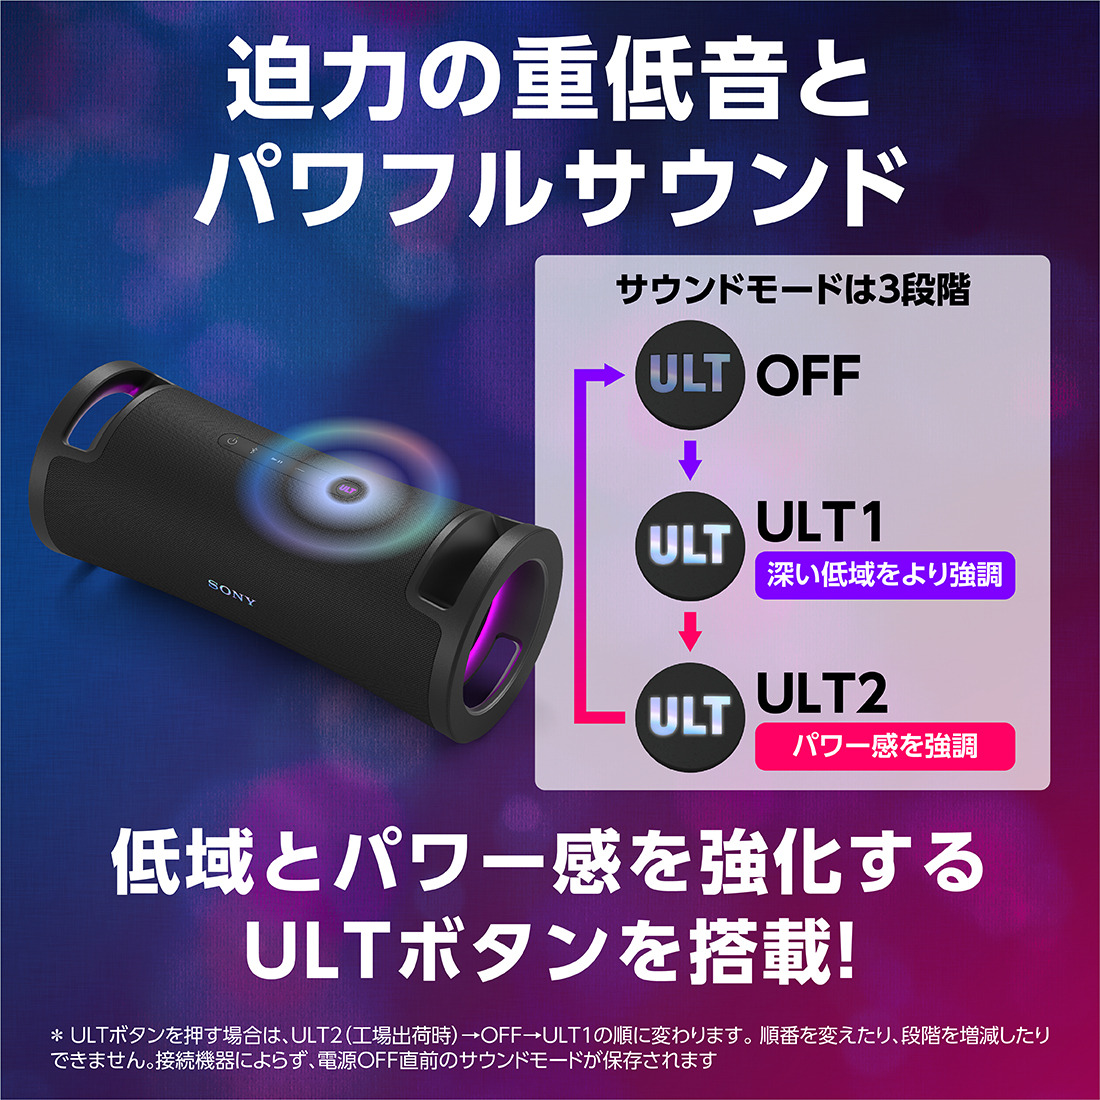 【新商品】
ソニー「ULT POWER SOUND」（アルトパワーサウンド）シリーズ
ワイヤレスポータブルスピーカー
『ULT FIELD 7(SRS-ULT70)』

発売日：2024年5月24日（金）
ソニーストア販売価格：66,000円(税込)
商品詳細こちら
x.gd/wsyQs

#SONY #ULTFIELD7 #SRSULT70